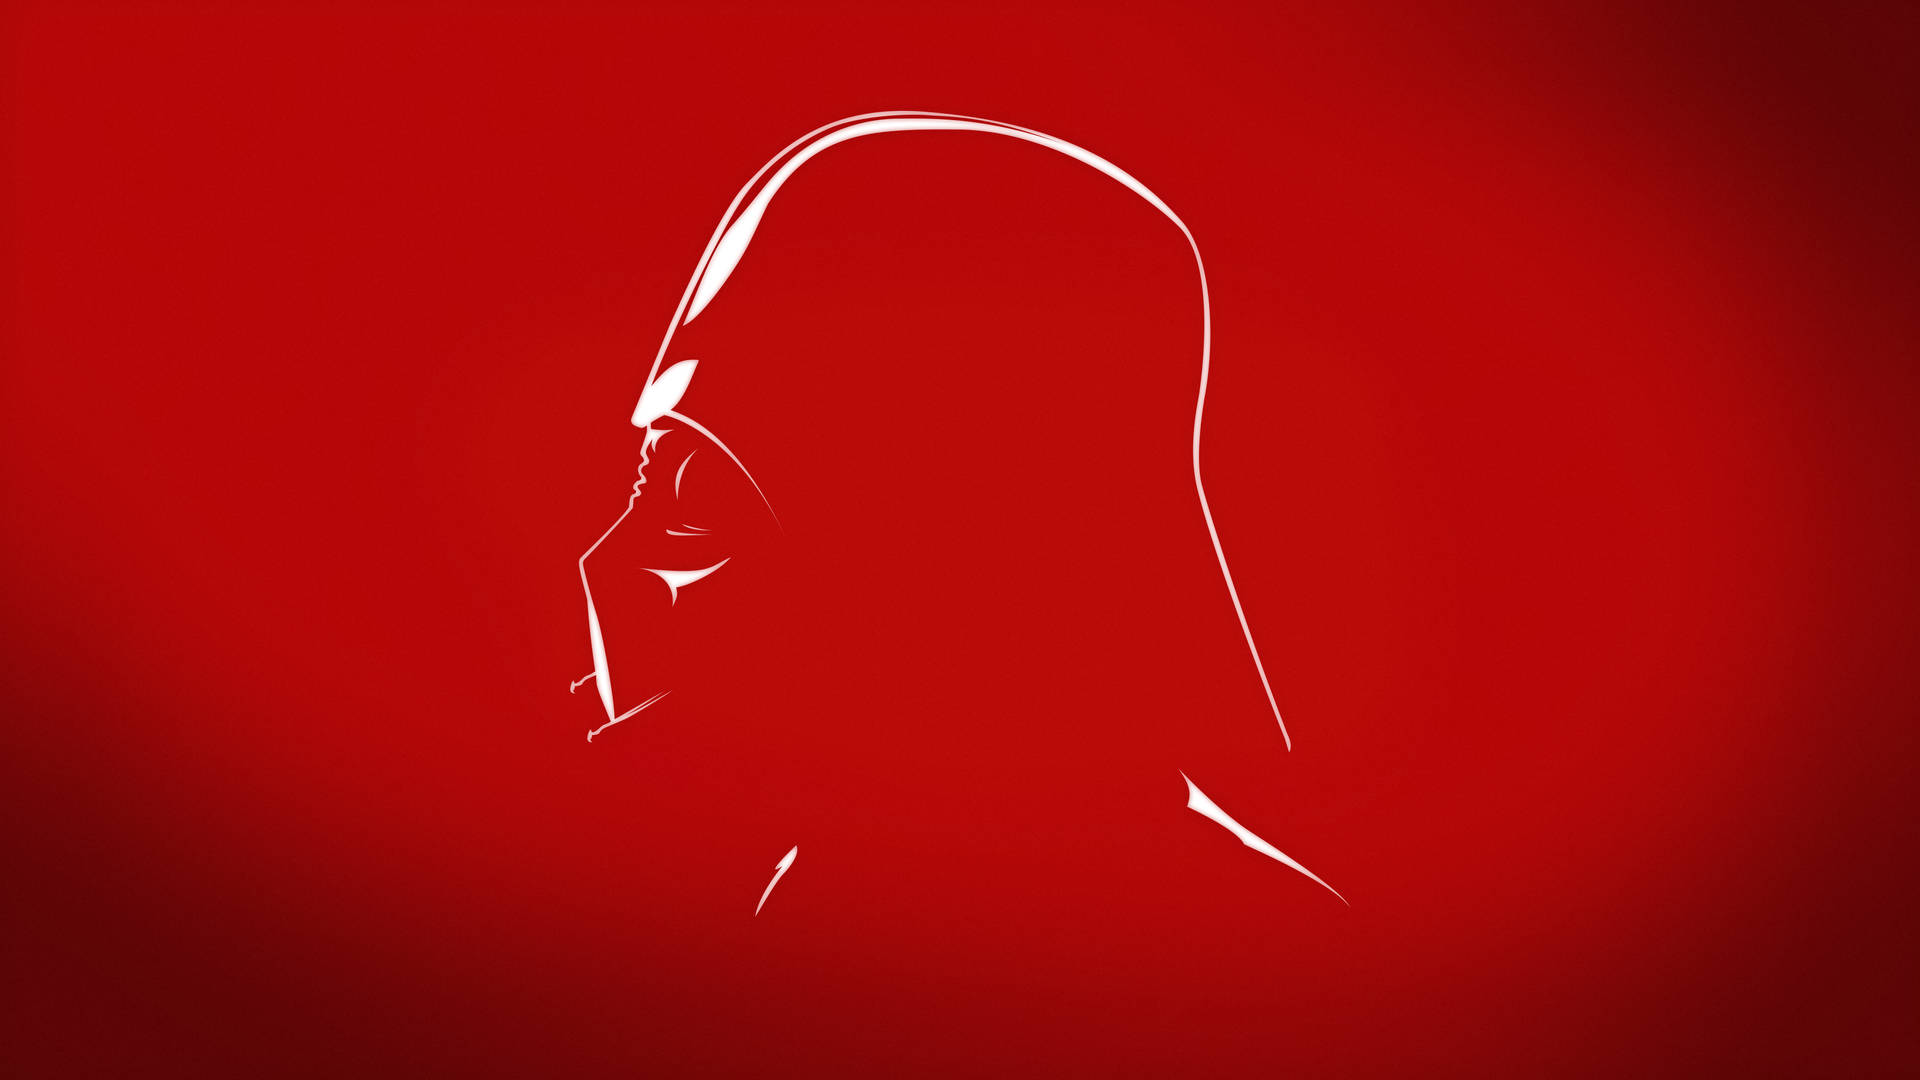 4kstar Wars Röd Estetisk Vader Wallpaper